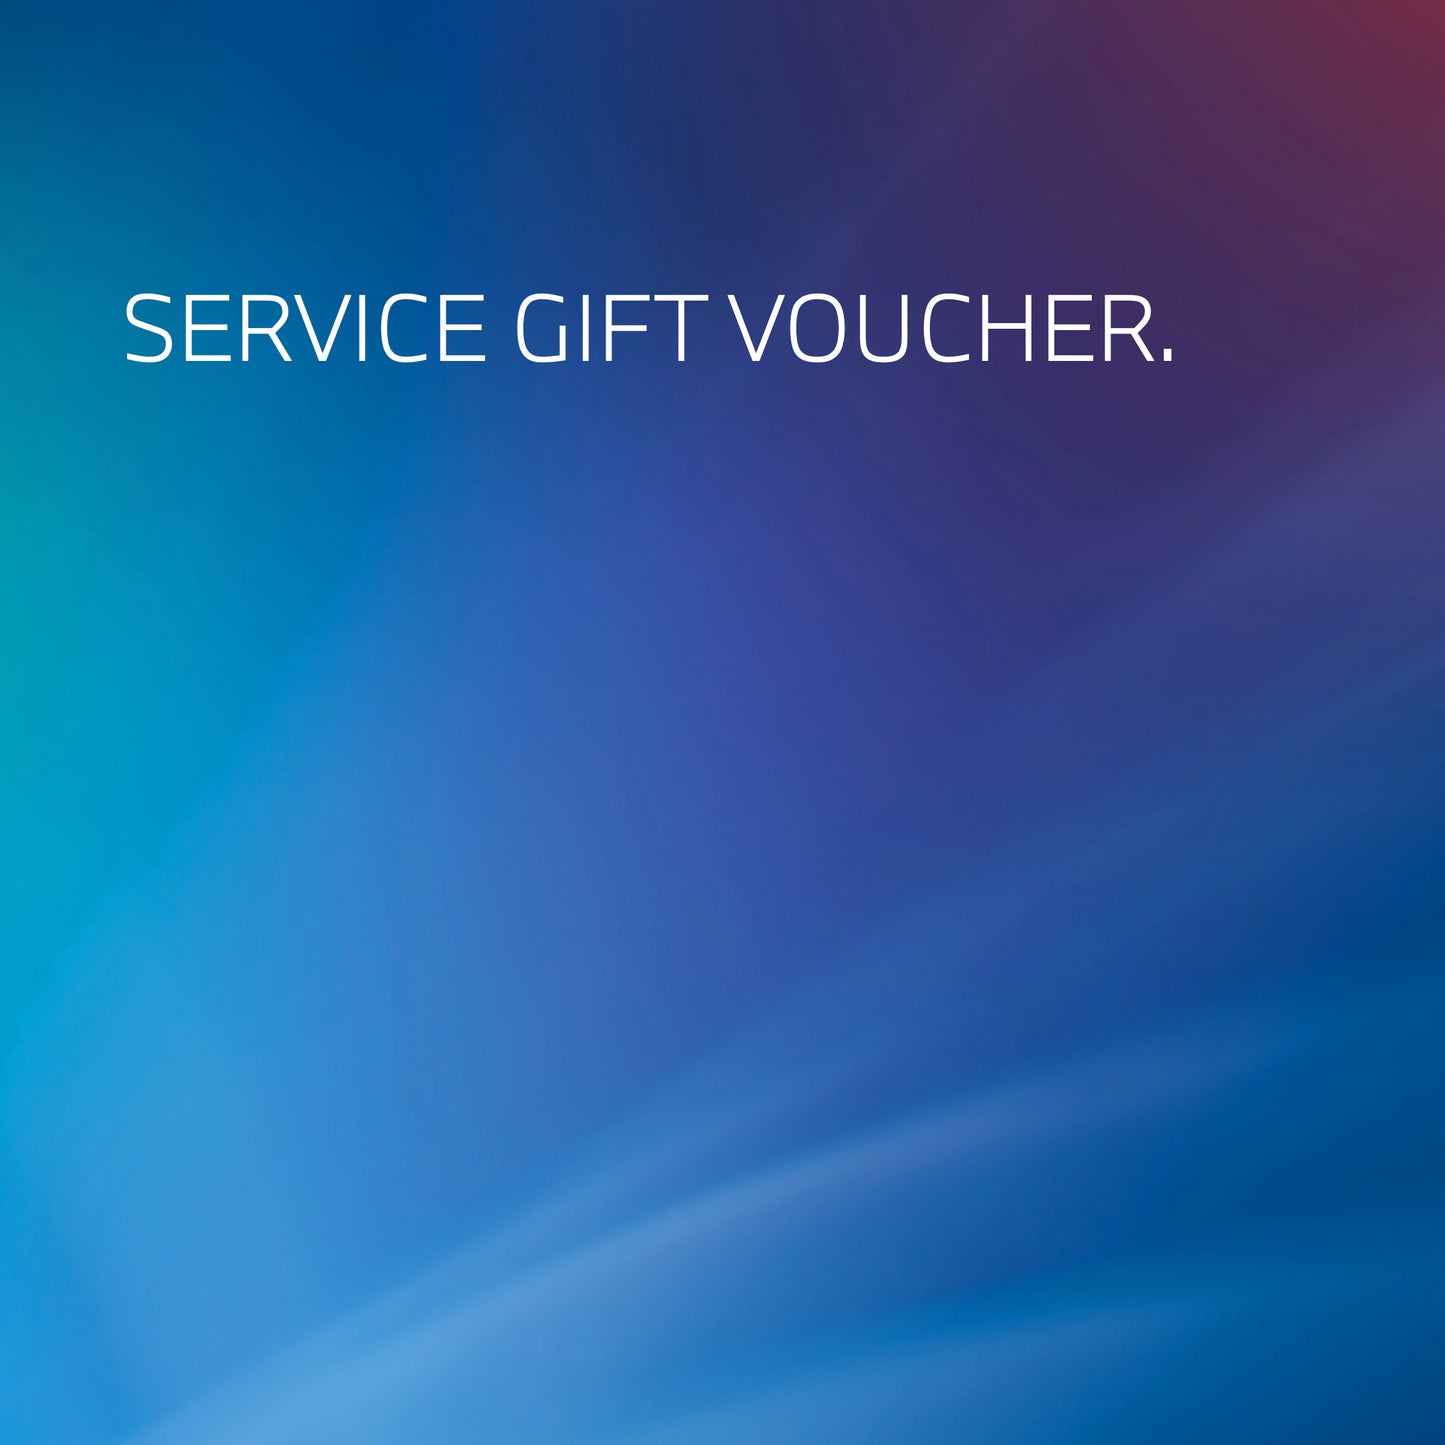 Service Gift Voucher